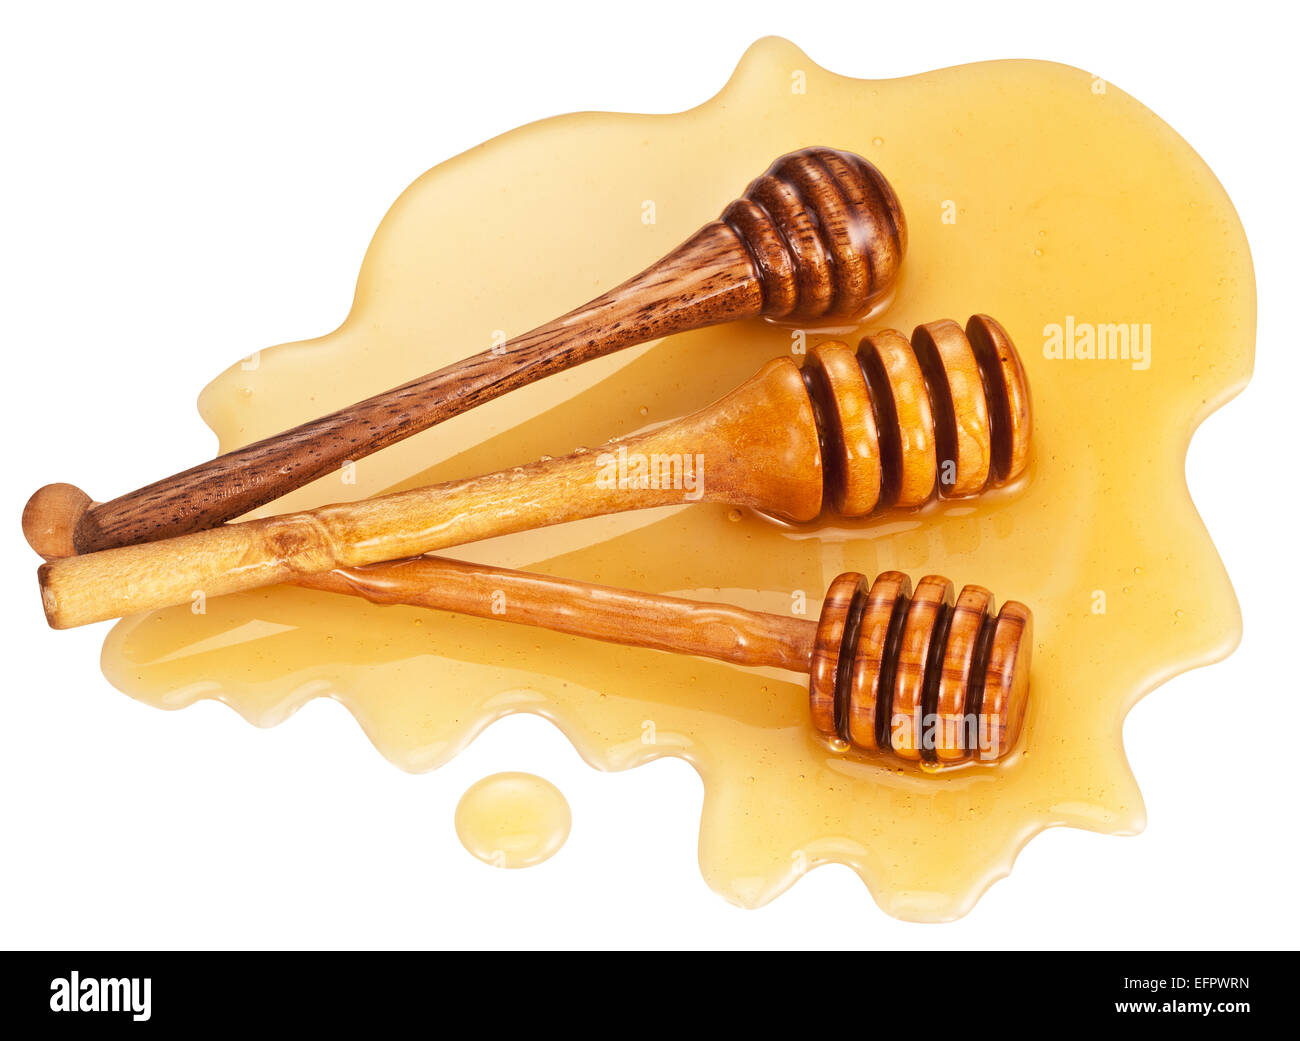 Holzstäbchen legt in Honig Flecken auf weißem Hintergrund. Beschneidungspfade. Stockfoto